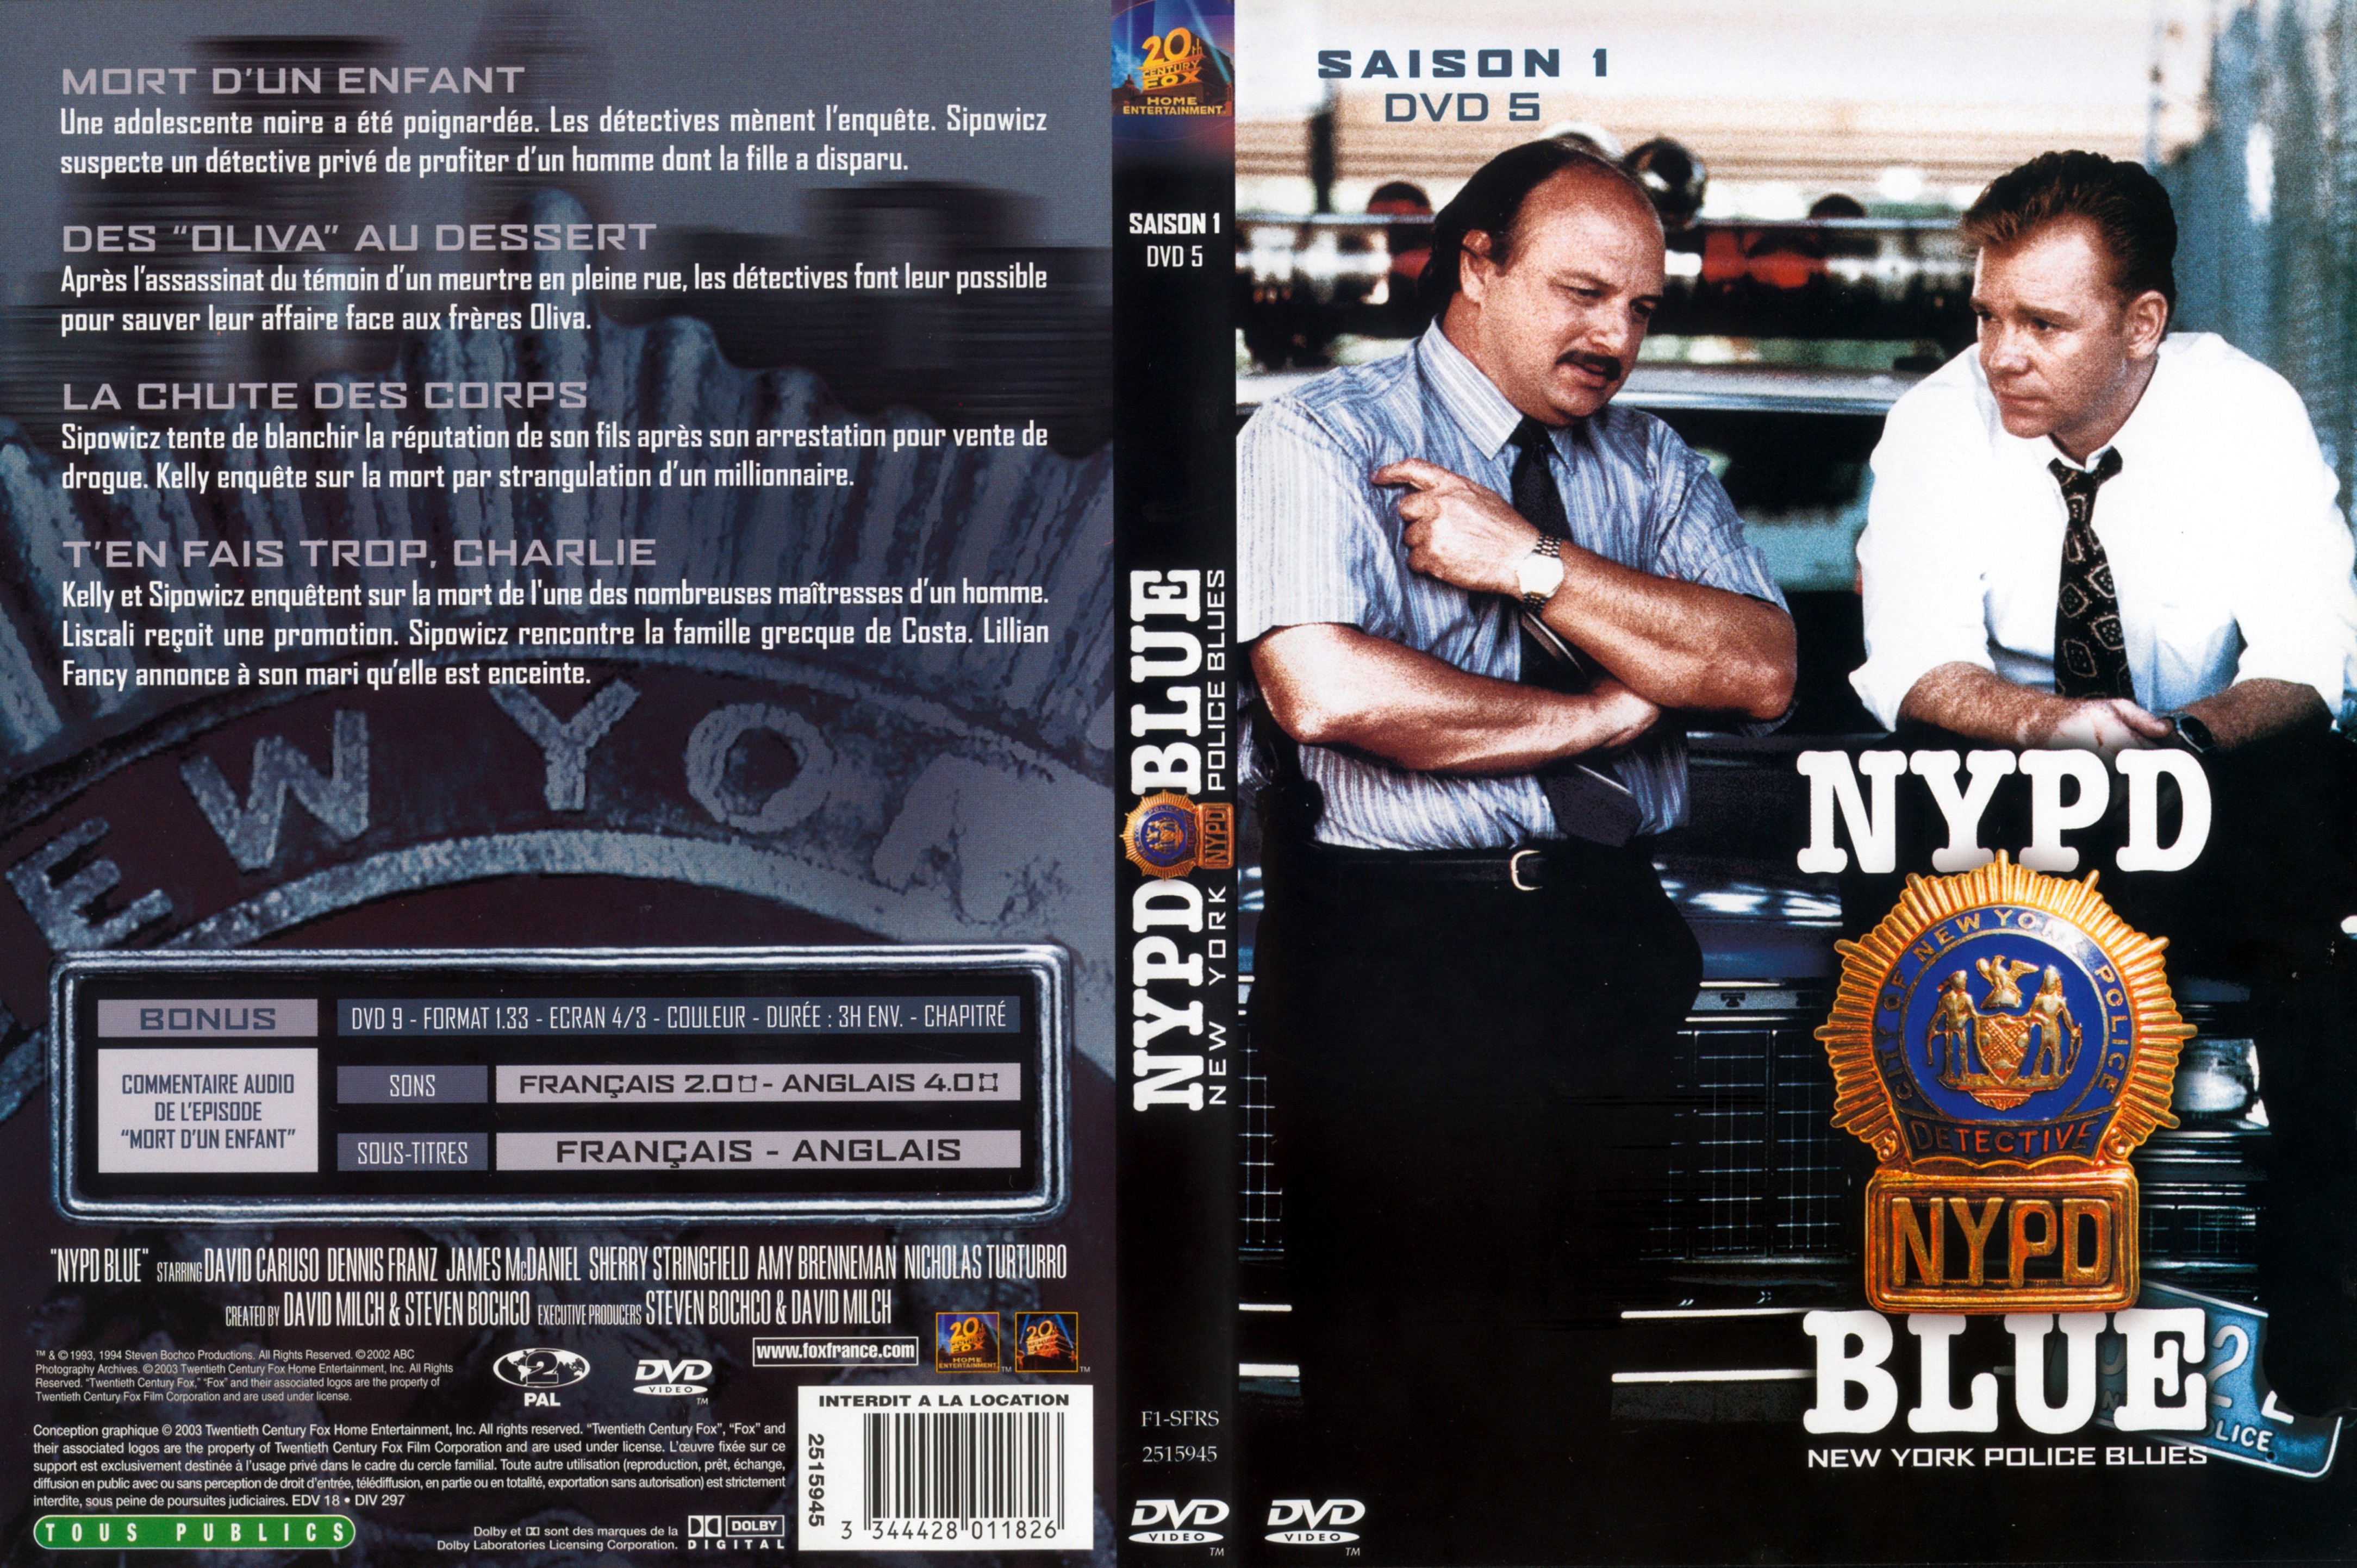 Jaquette DVD NYPD Blue saison 01 dvd 05